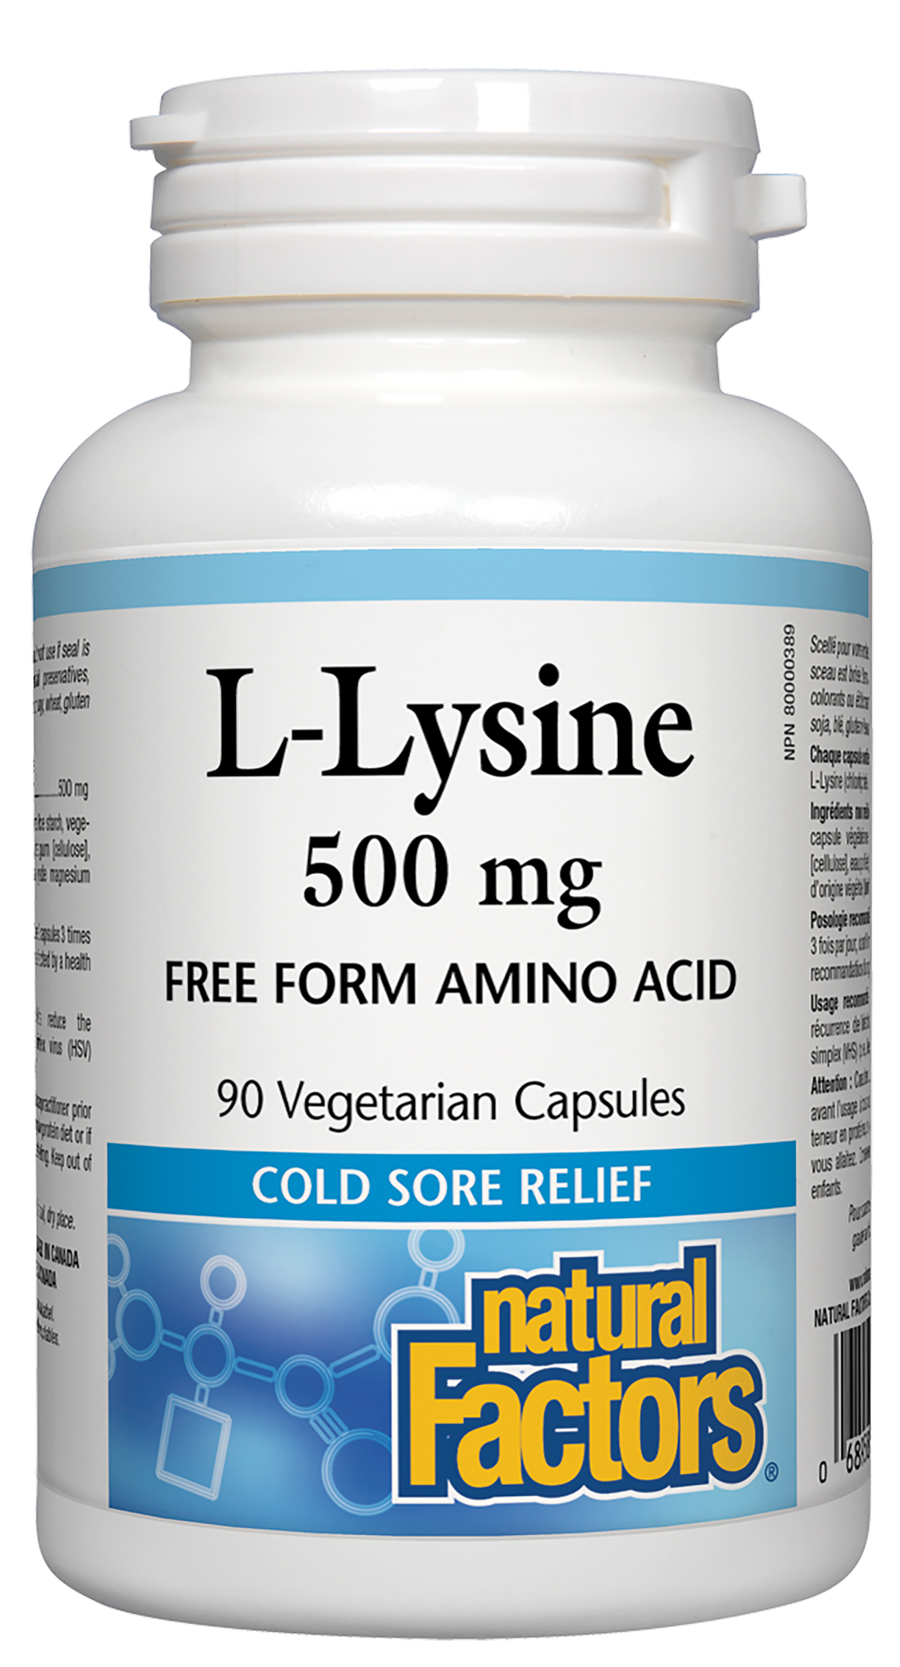 Natural Factors L-Lysine 500 mg 90 Veg. Capsules